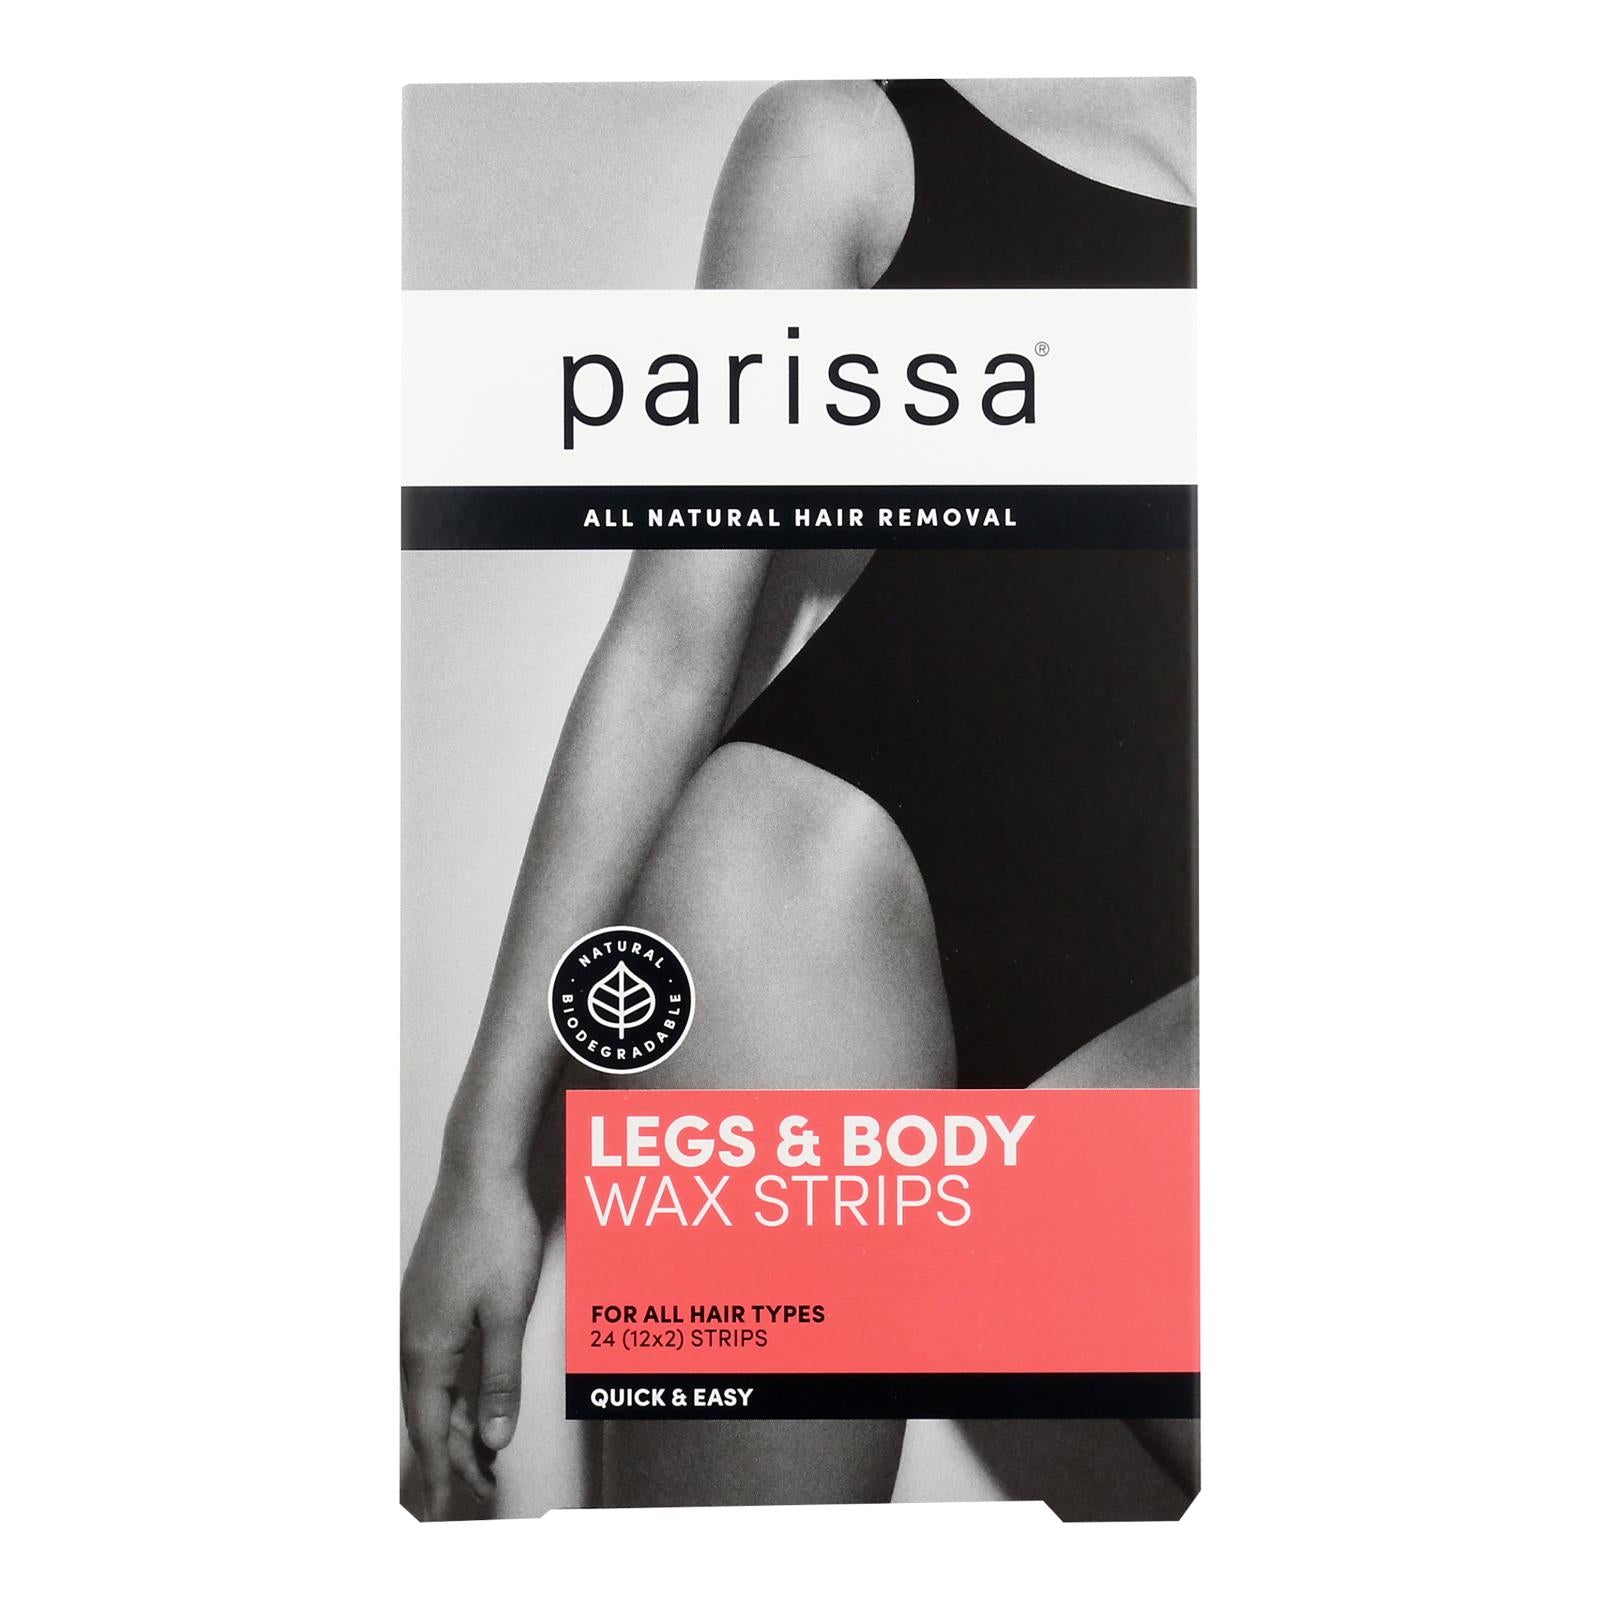 Parissa - Wax Strips Qk/ezy Lg Body - 1 Each 1-24 CT